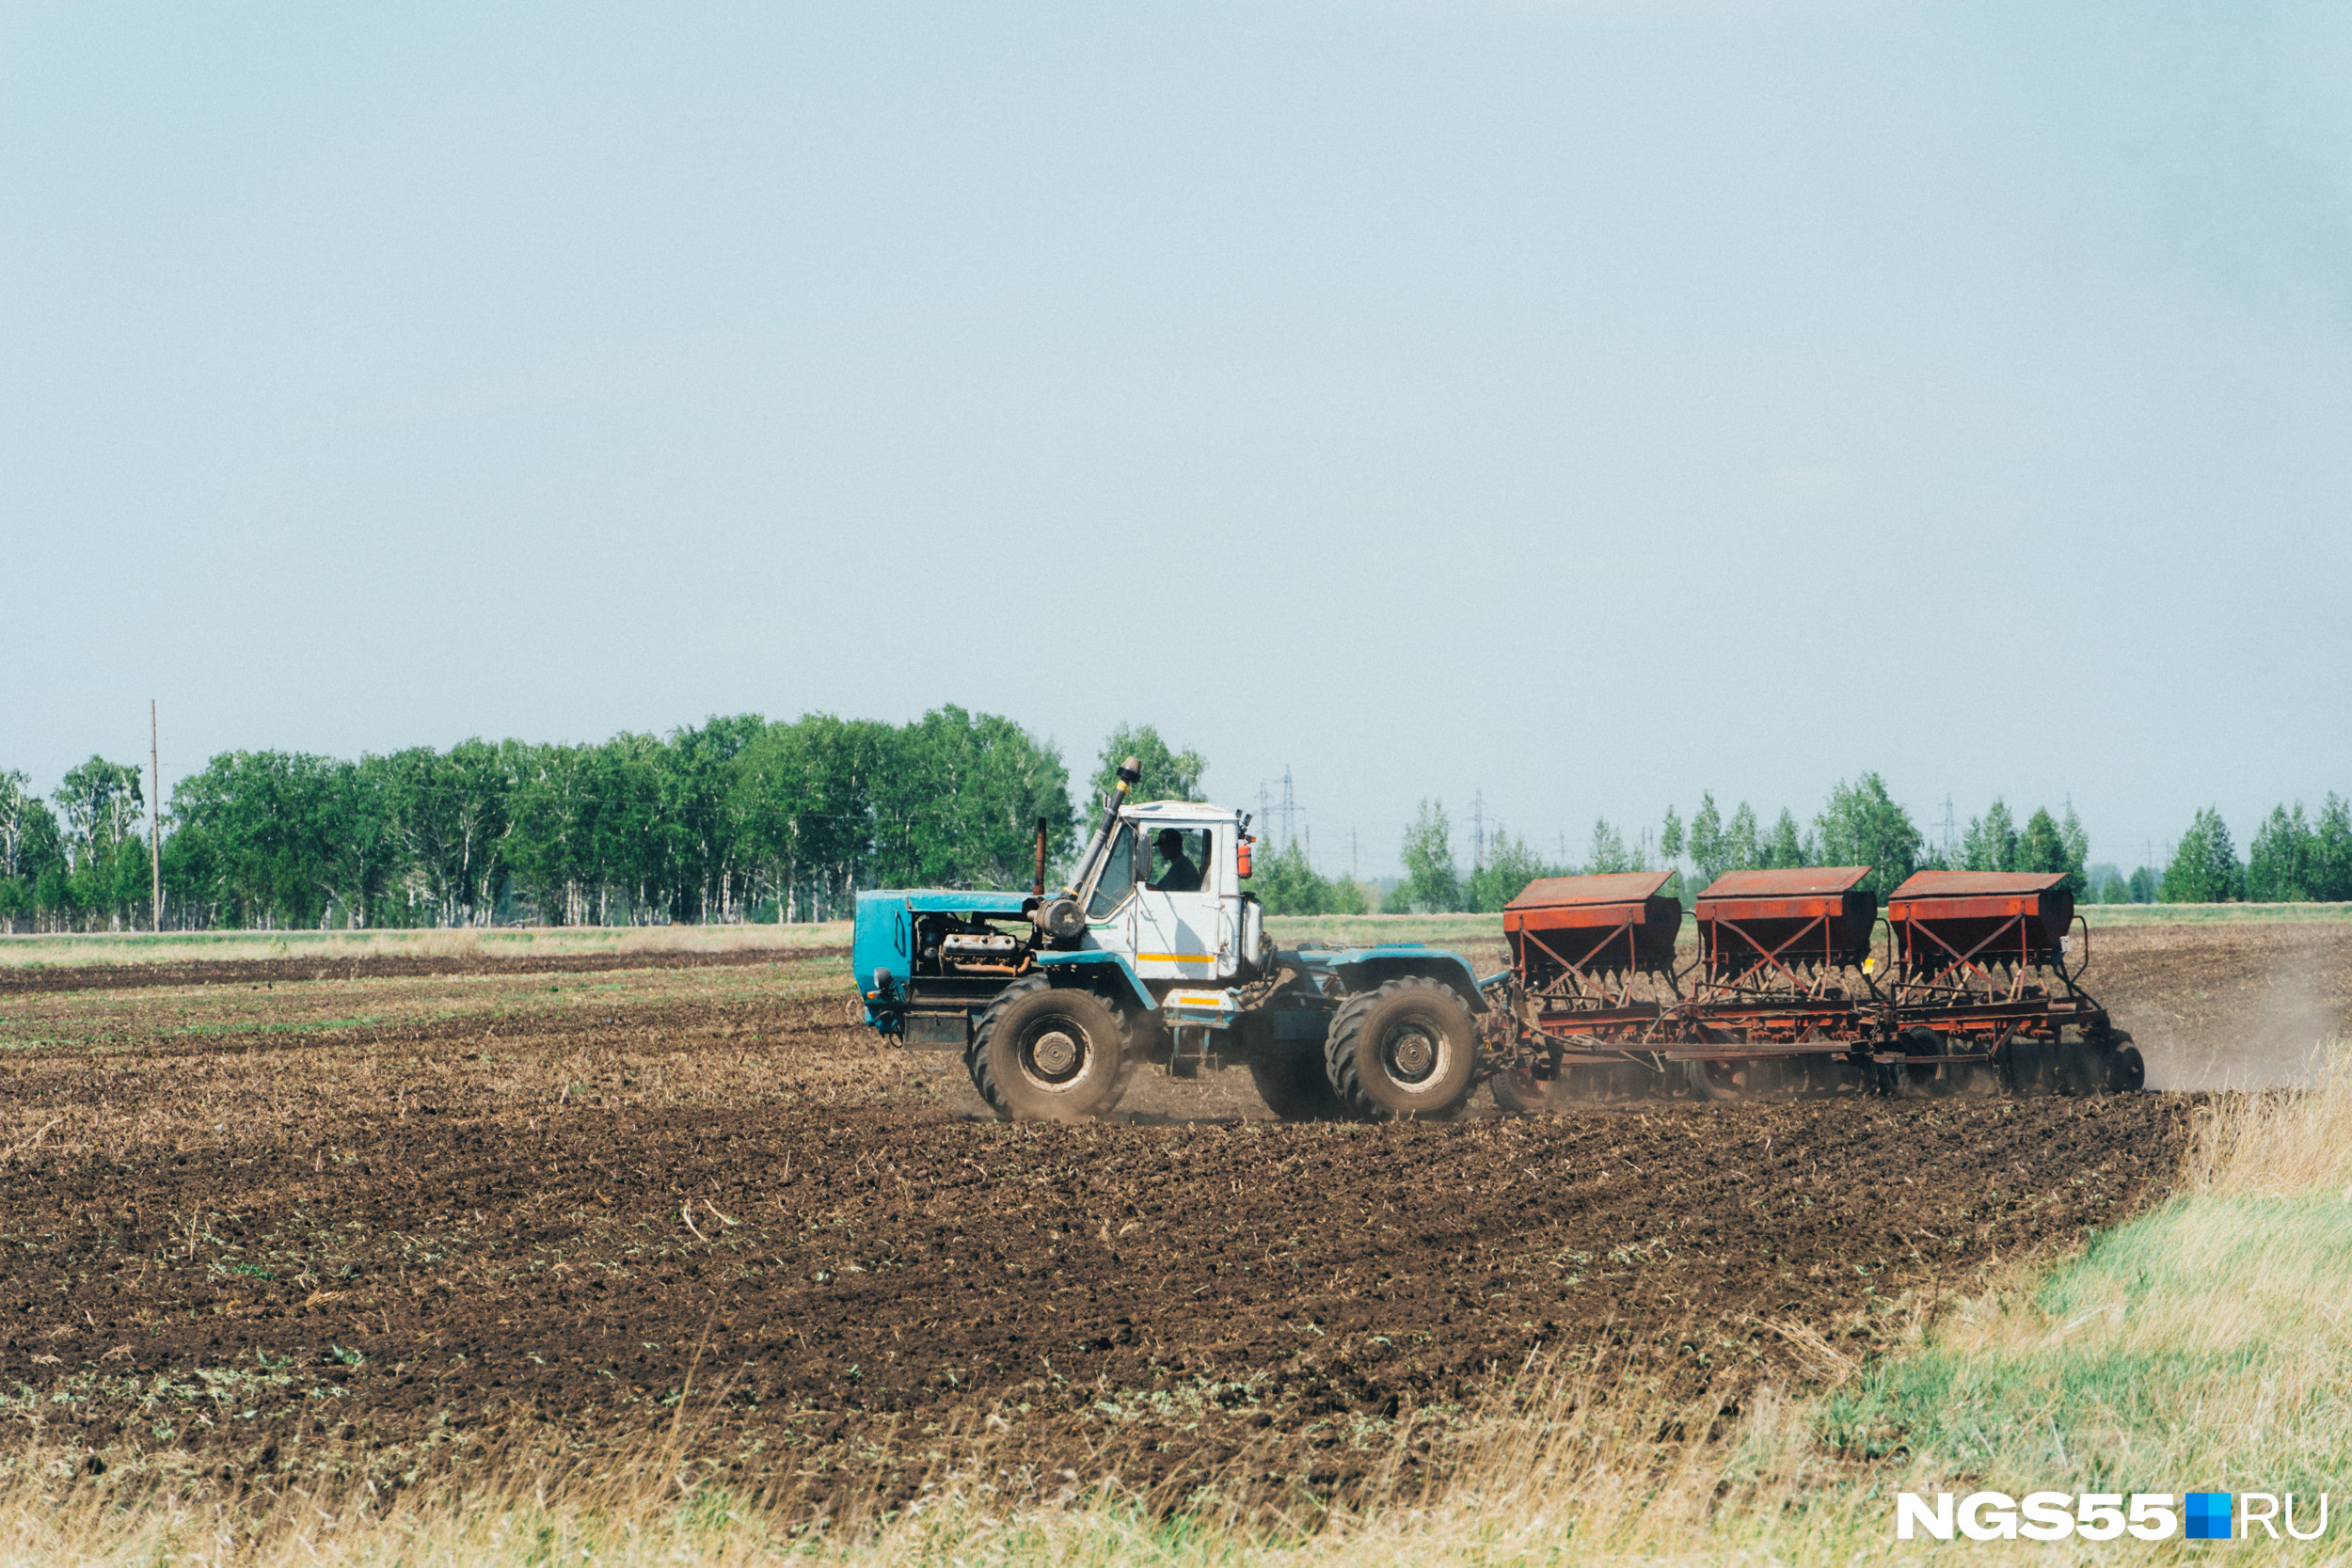 Сельское хозяйство — основная и ведущая сфера деятельности в районах Омской области